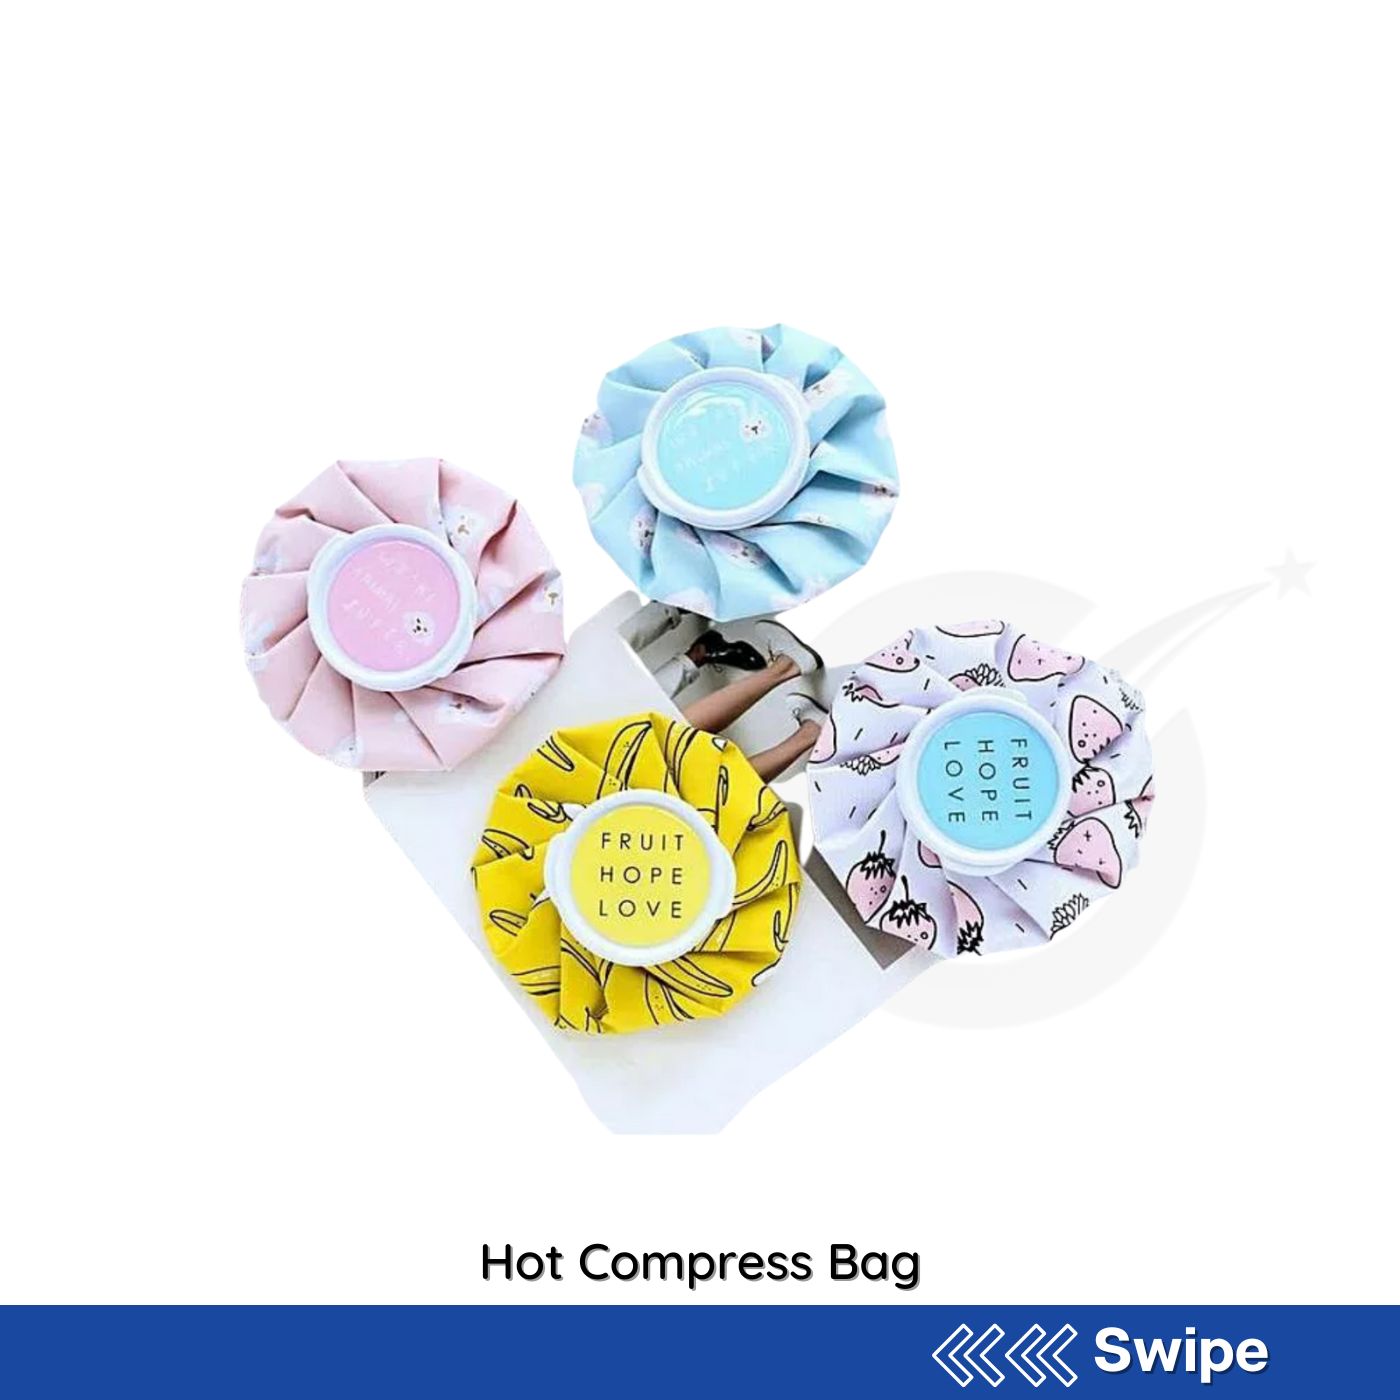 Hot Compress Bag